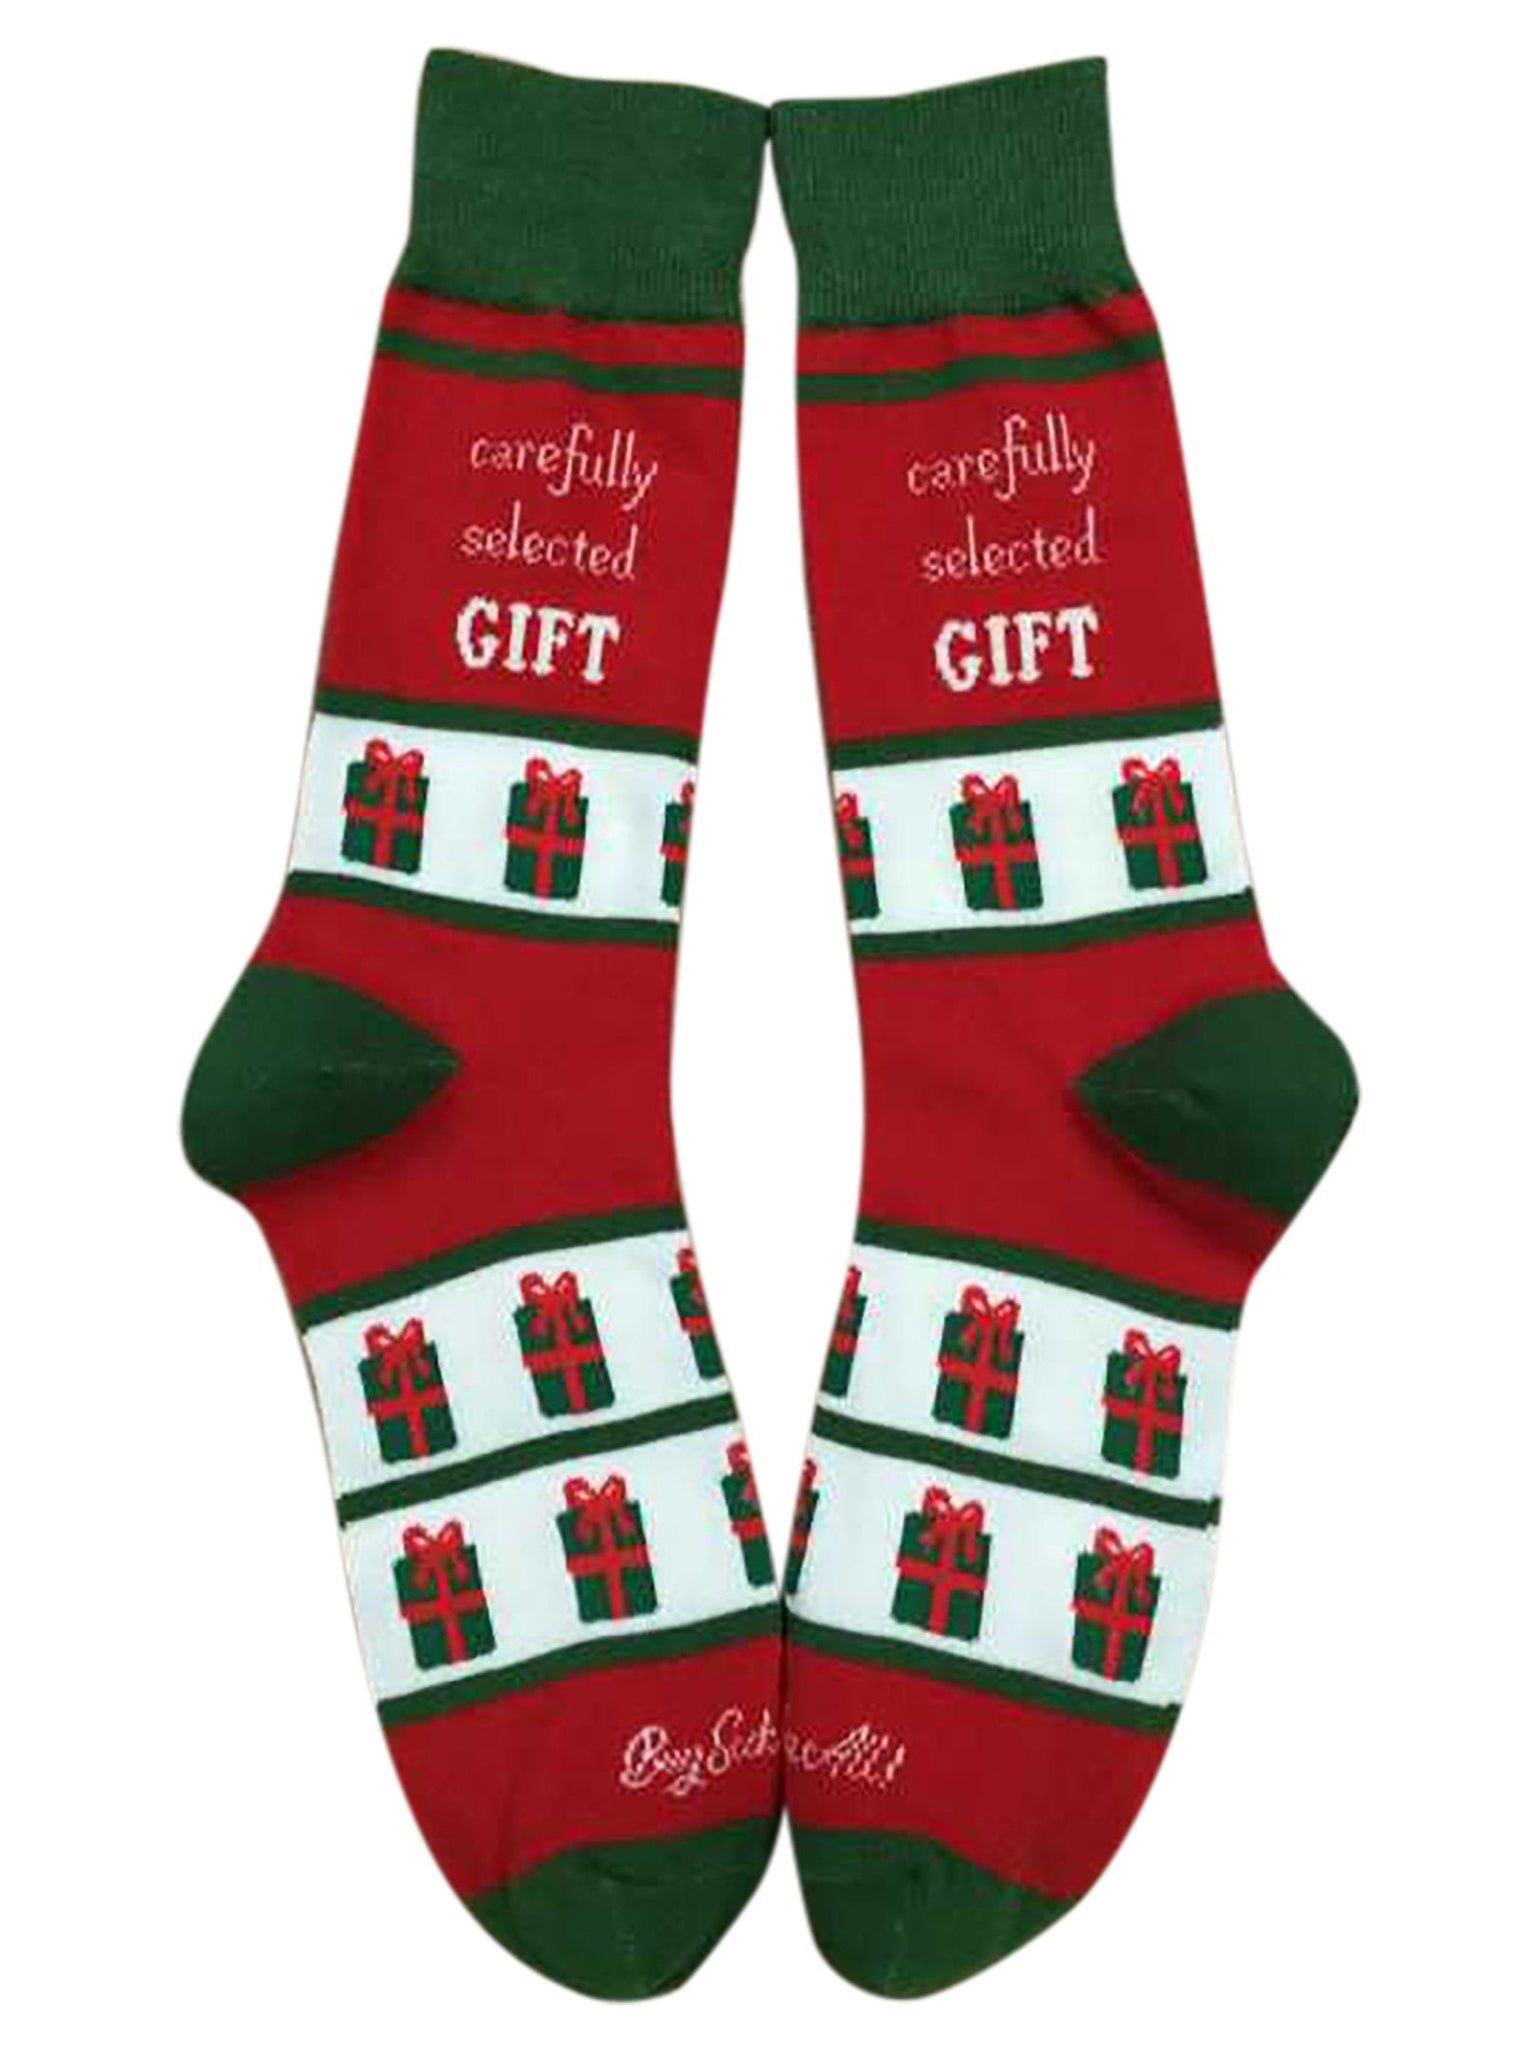 Carefully Selected Gift Men's Socks